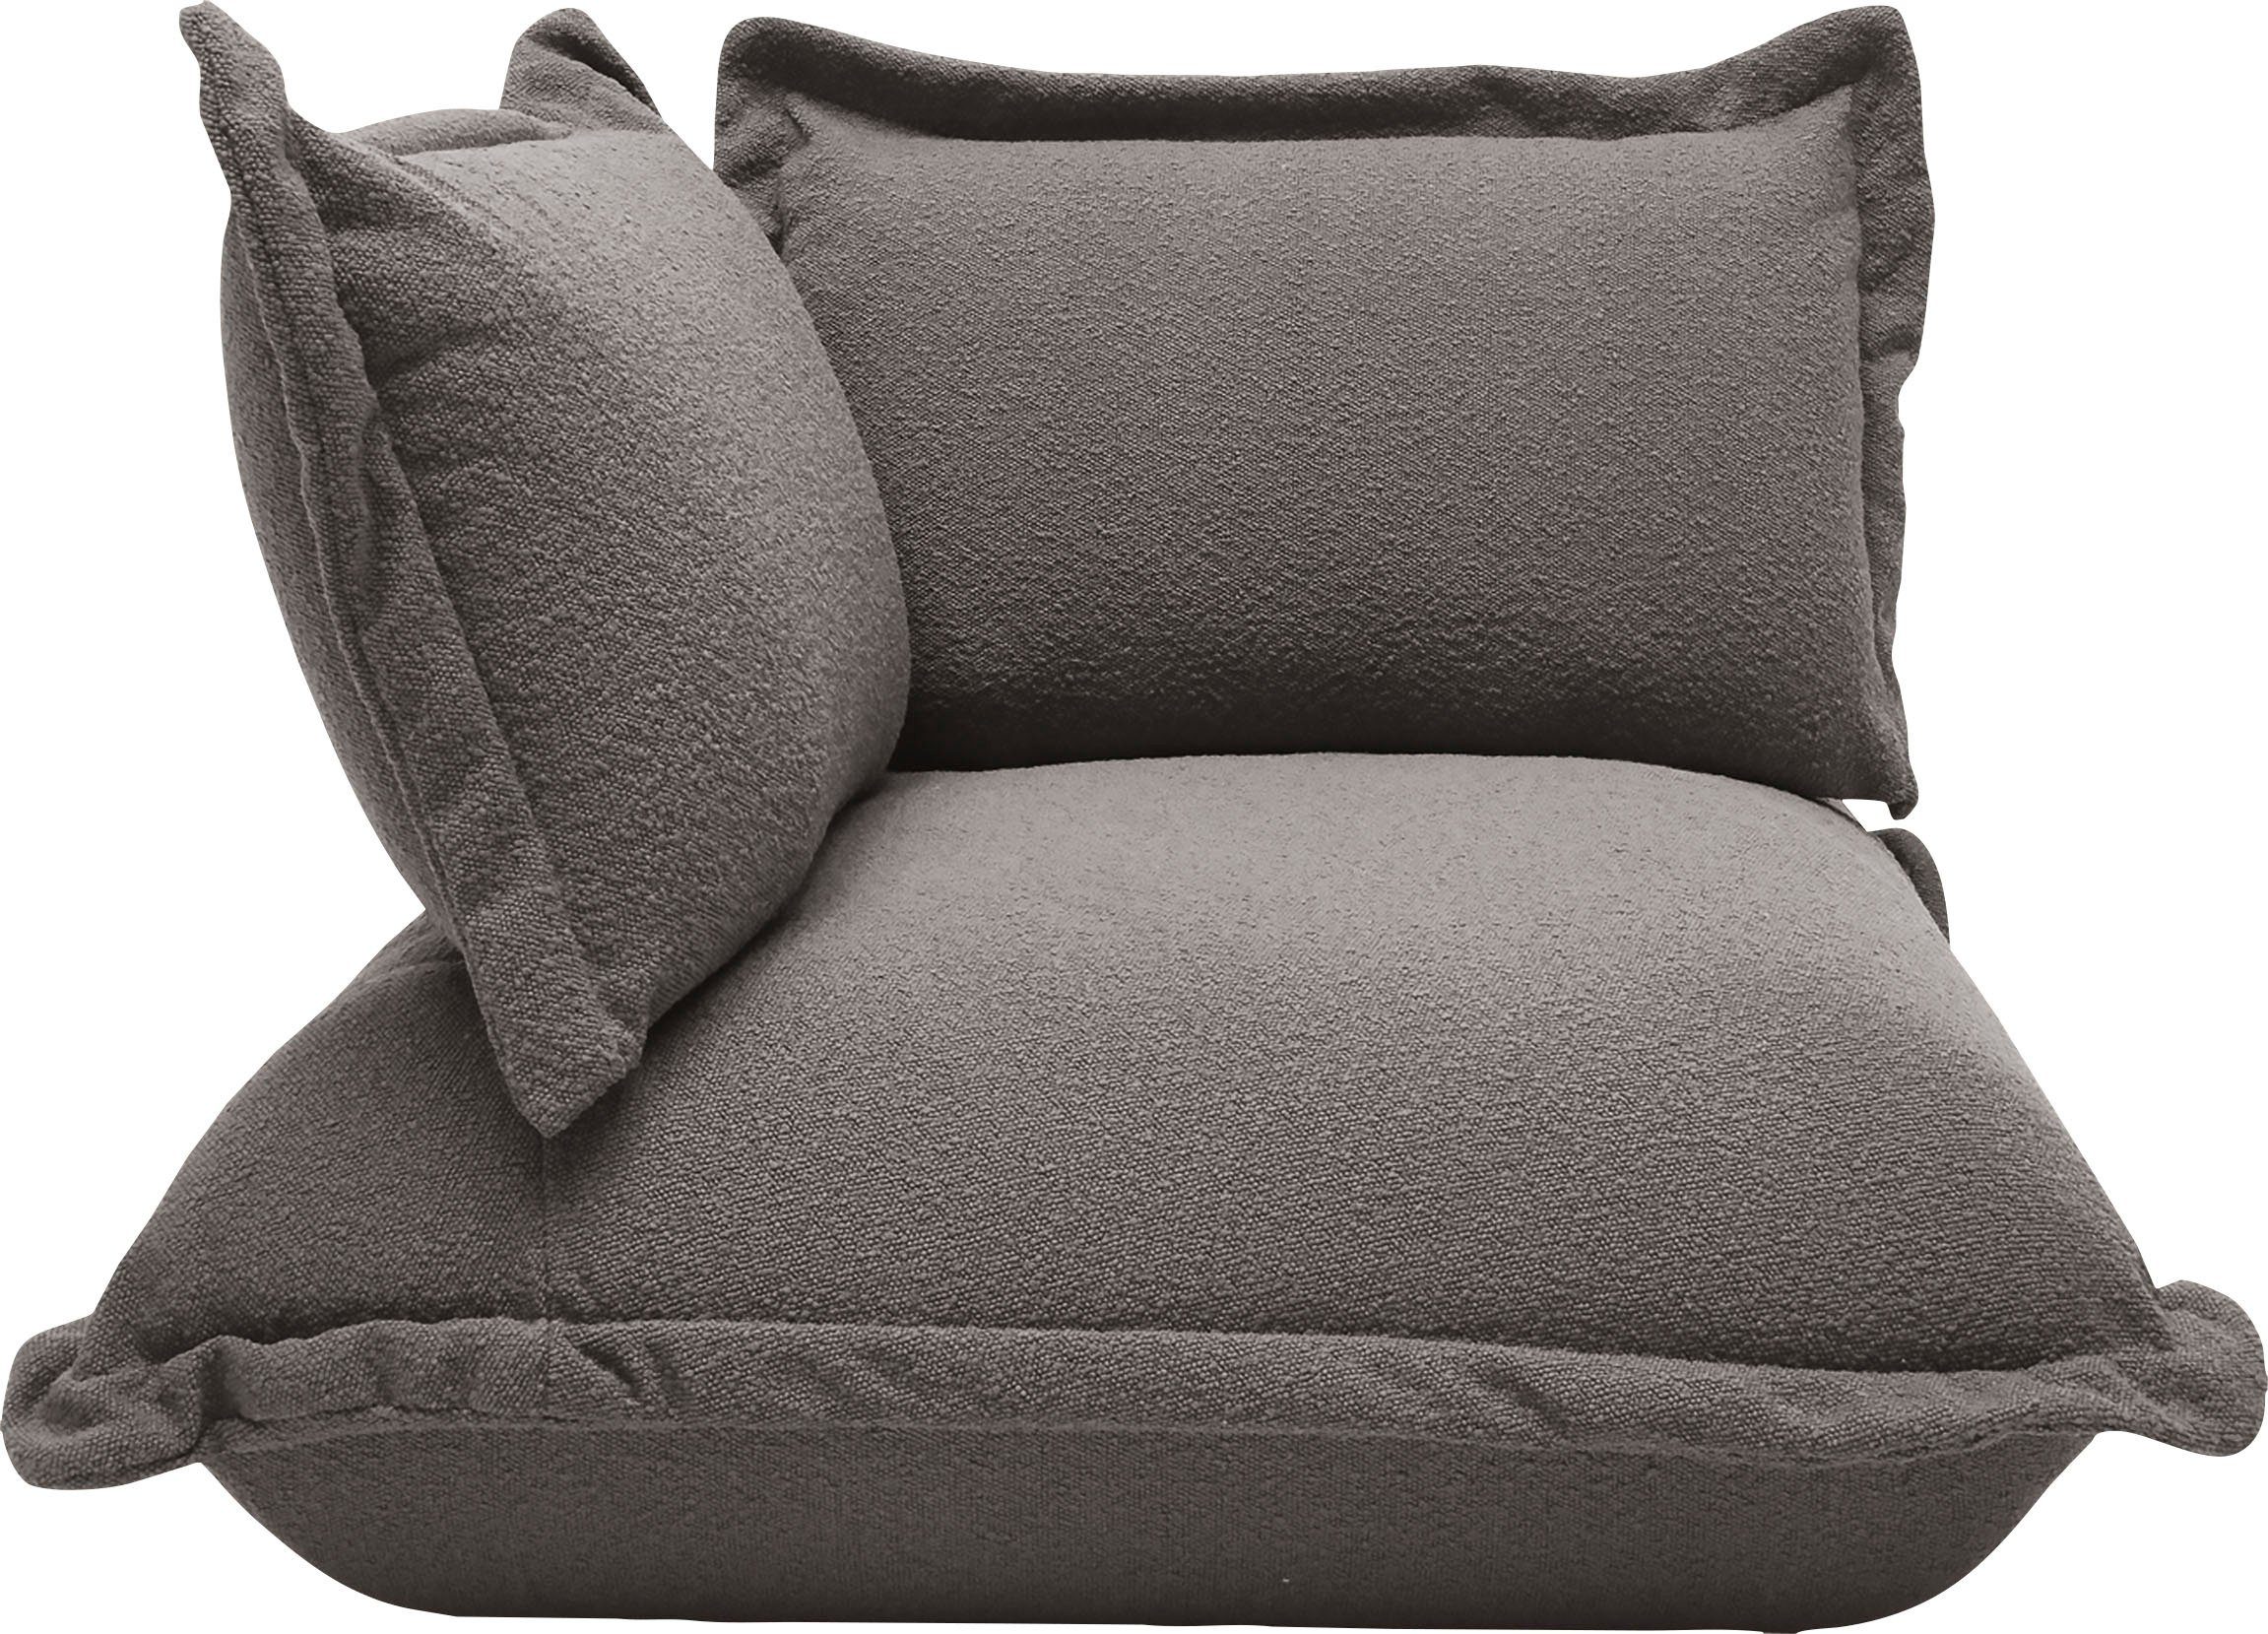 TOM TAILOR HOME Sofa-Eckelement Cushion, im lässigen Kissenlook, mit softer Kaltschaumpolsterung | Sofaelemente